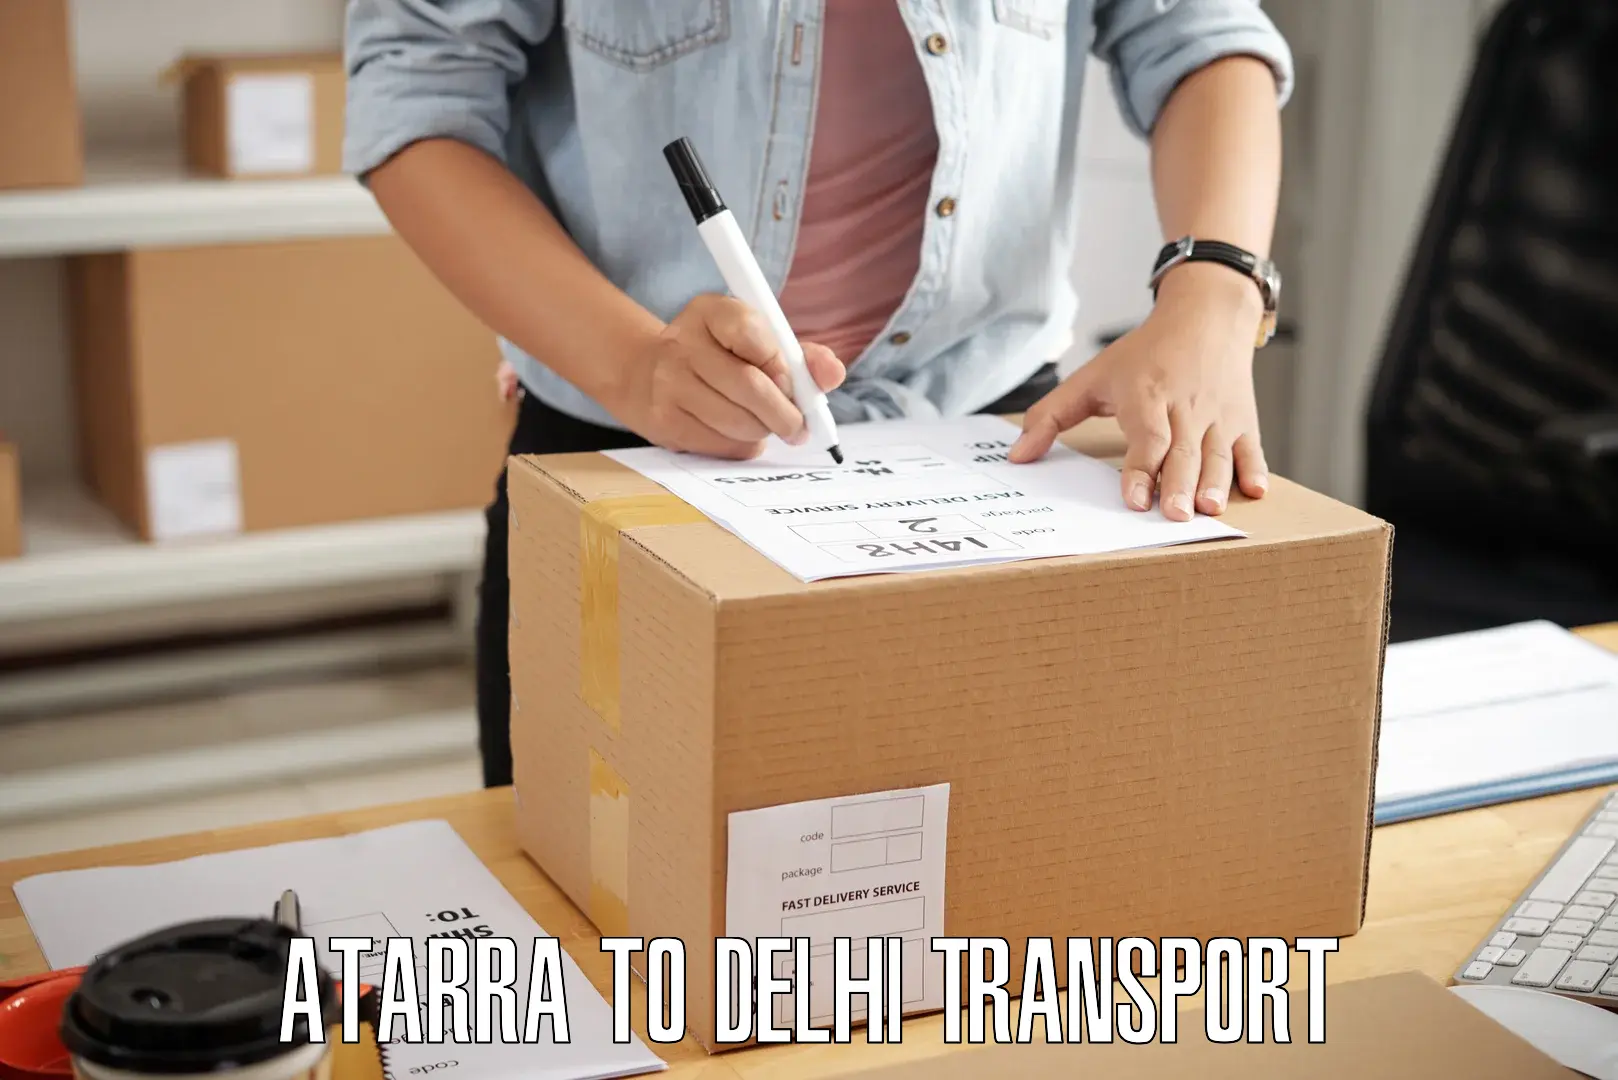 Interstate transport services Atarra to IIT Delhi